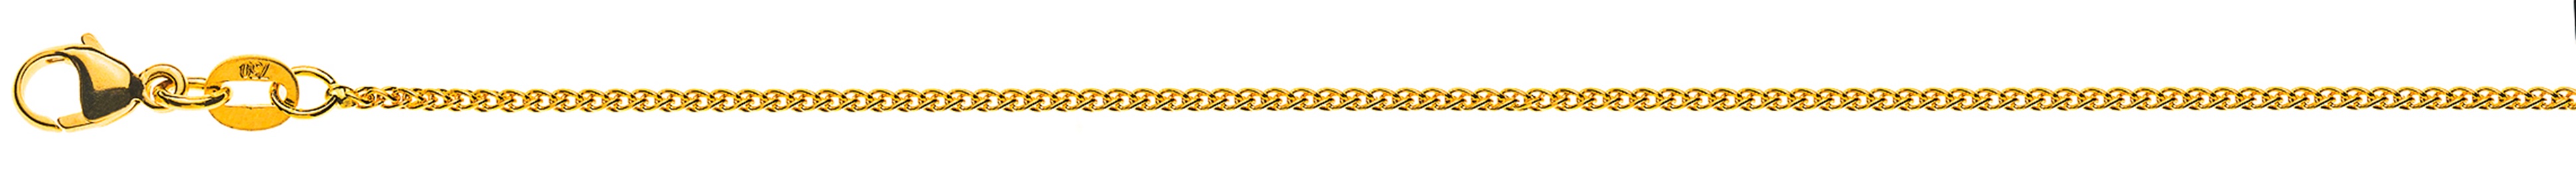 AURONOS Style Halskette Gelbgold 9K Zopfkette 50cm 1.2mm